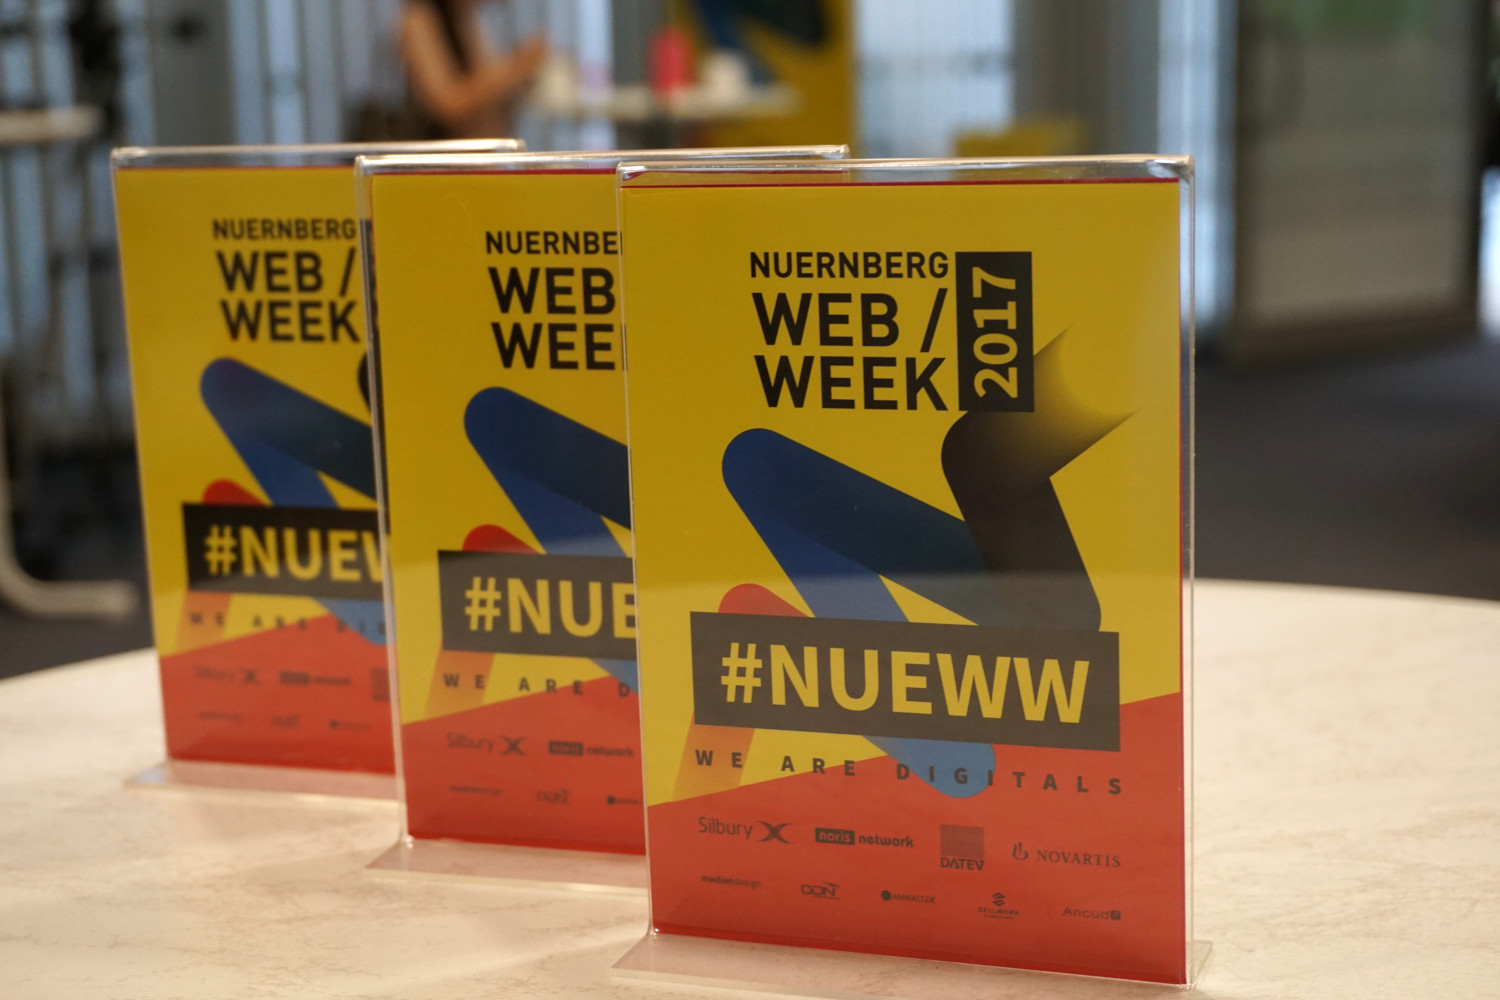 On the roads of the Nuremberg Web Week #NUEWW